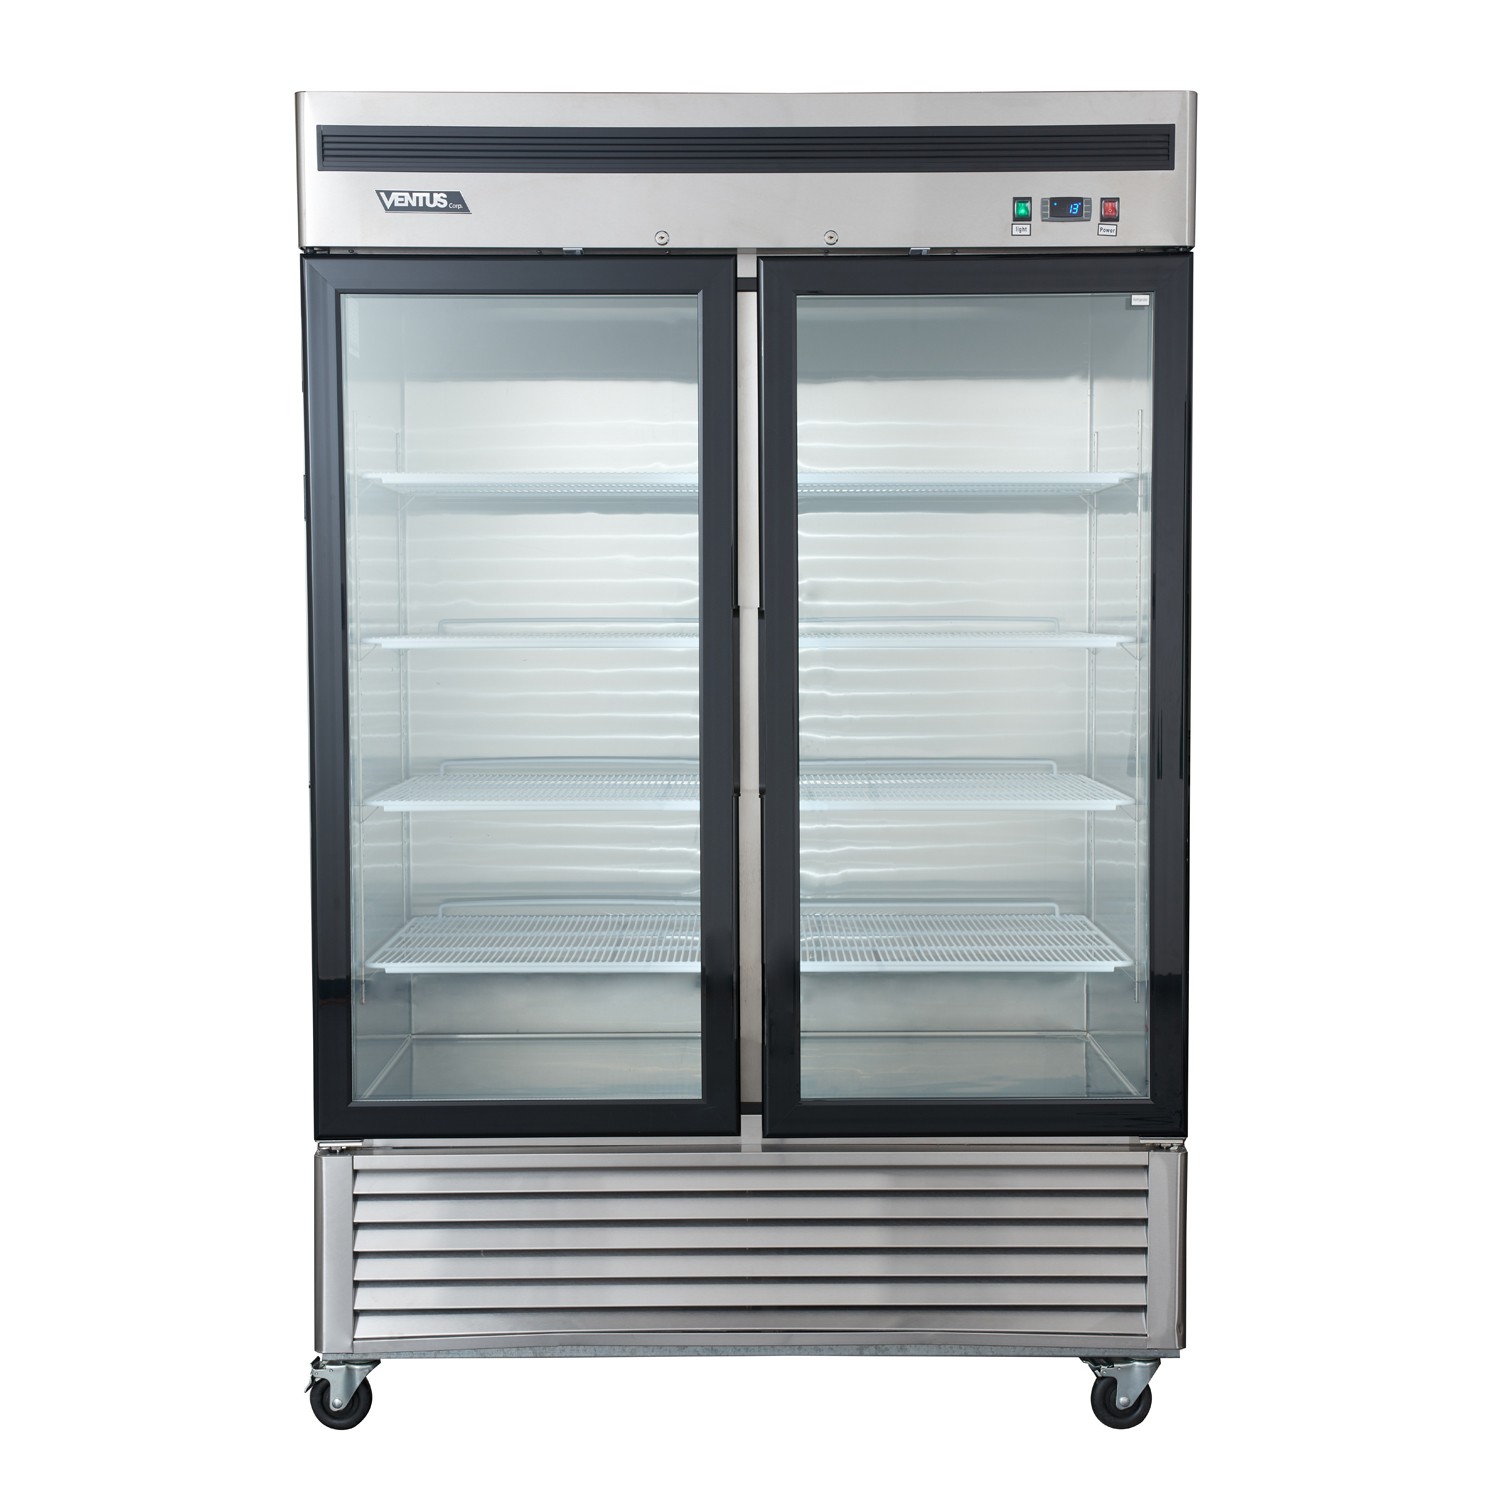 Refrigerador vertical de dos puertas en vidrio